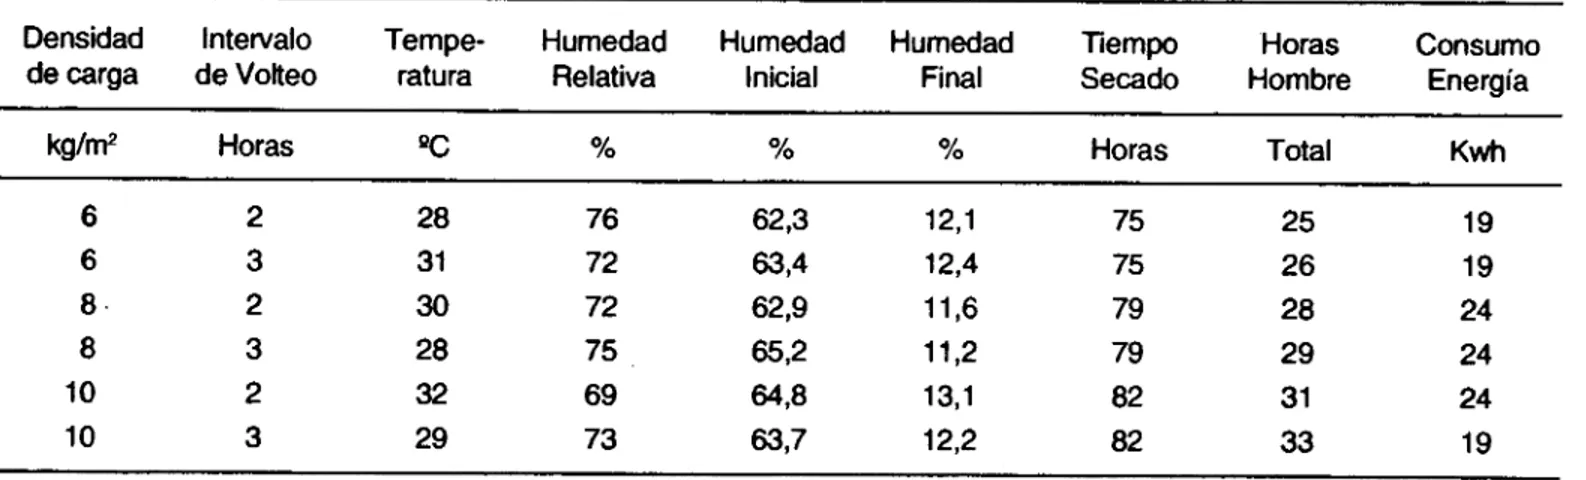 TABLA 2. Secado natural de yuca en Caucheras, época lluviosa 1991 -1993 Densidad de carga kg/M2 6 6 8 8 10 10 Intervalo de VolteoHoras232323 Tempe-raturaºC283130283229